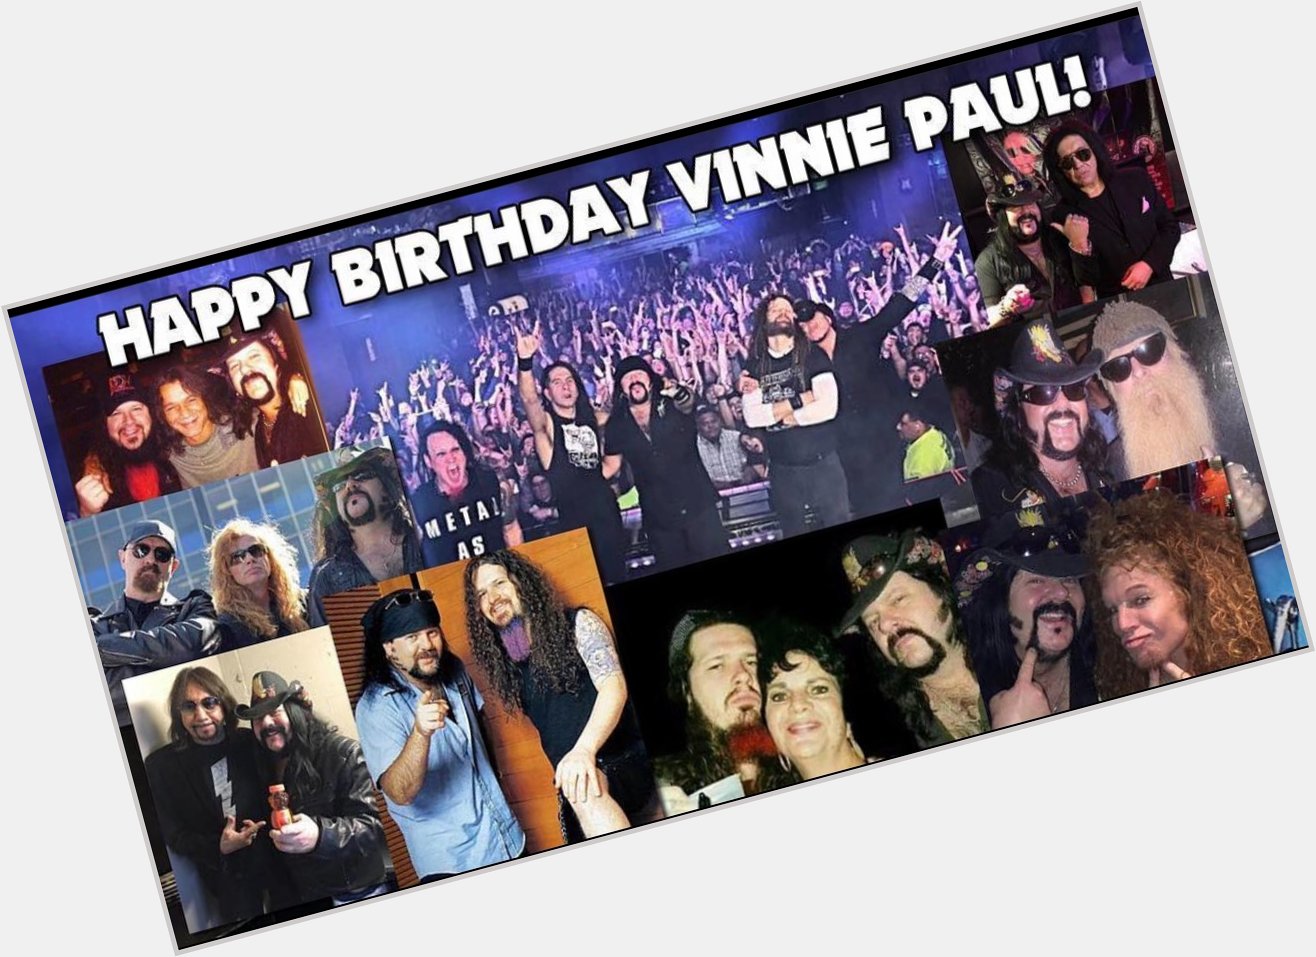 Happy 58th Birthday to Vinnie Paul! He is beyond missed. 